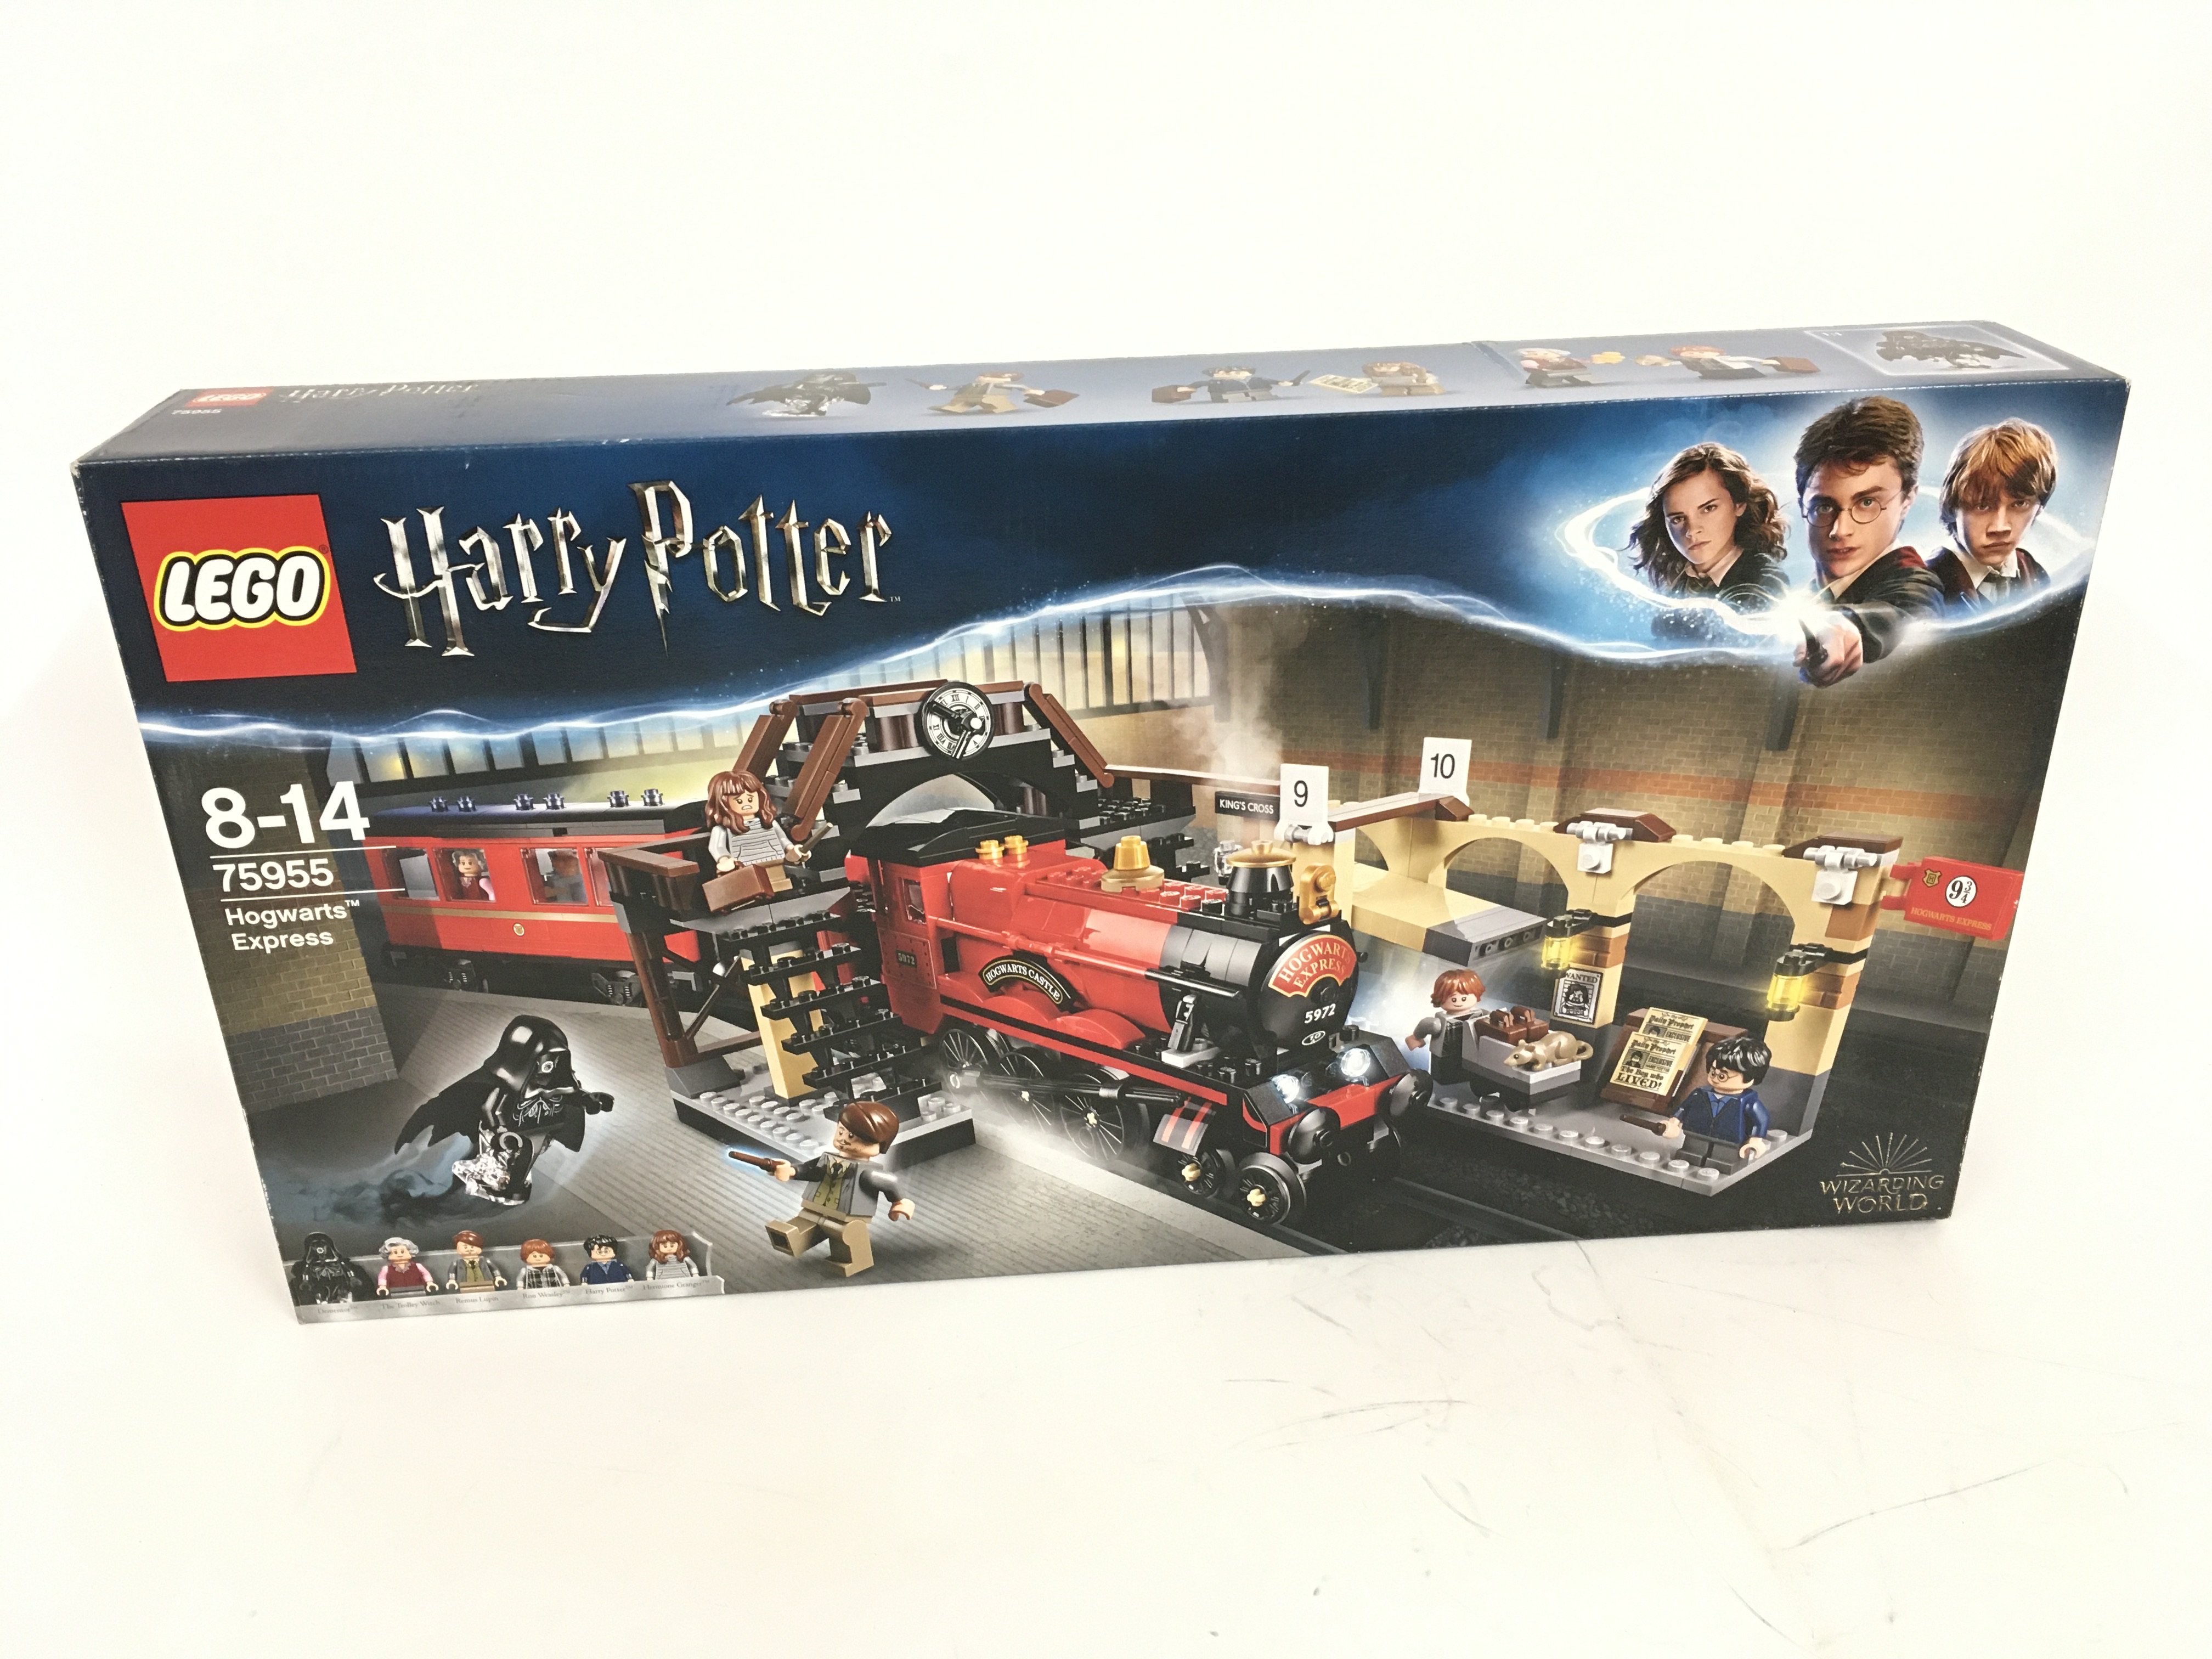 Sealed and unopened boxed Lego set. Harry Potter. 75955 HOGWARTS EXPRESS.